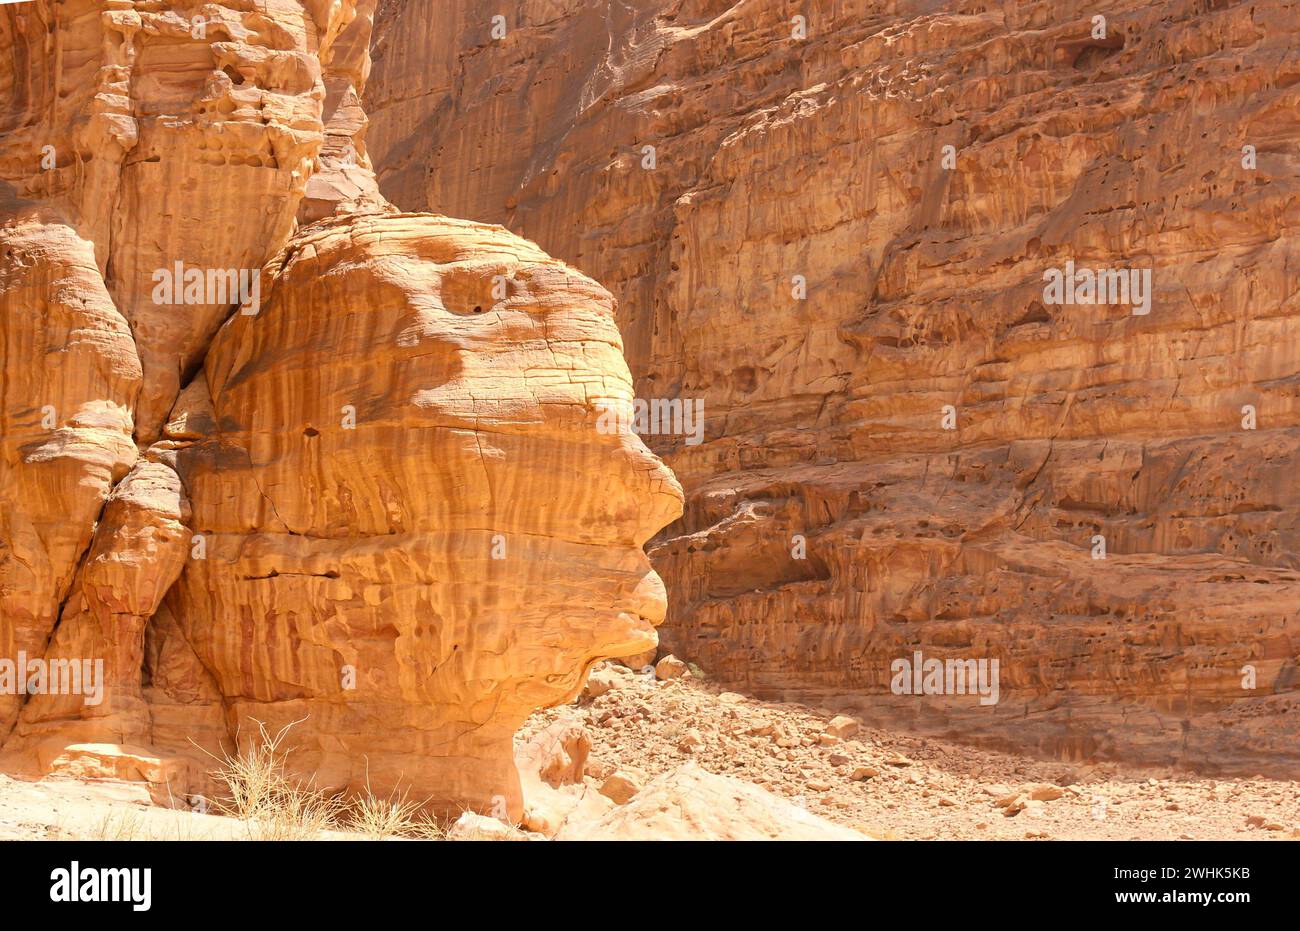 Visage humain comme rocher à Wadi Rum, Jordanie. Banque D'Images